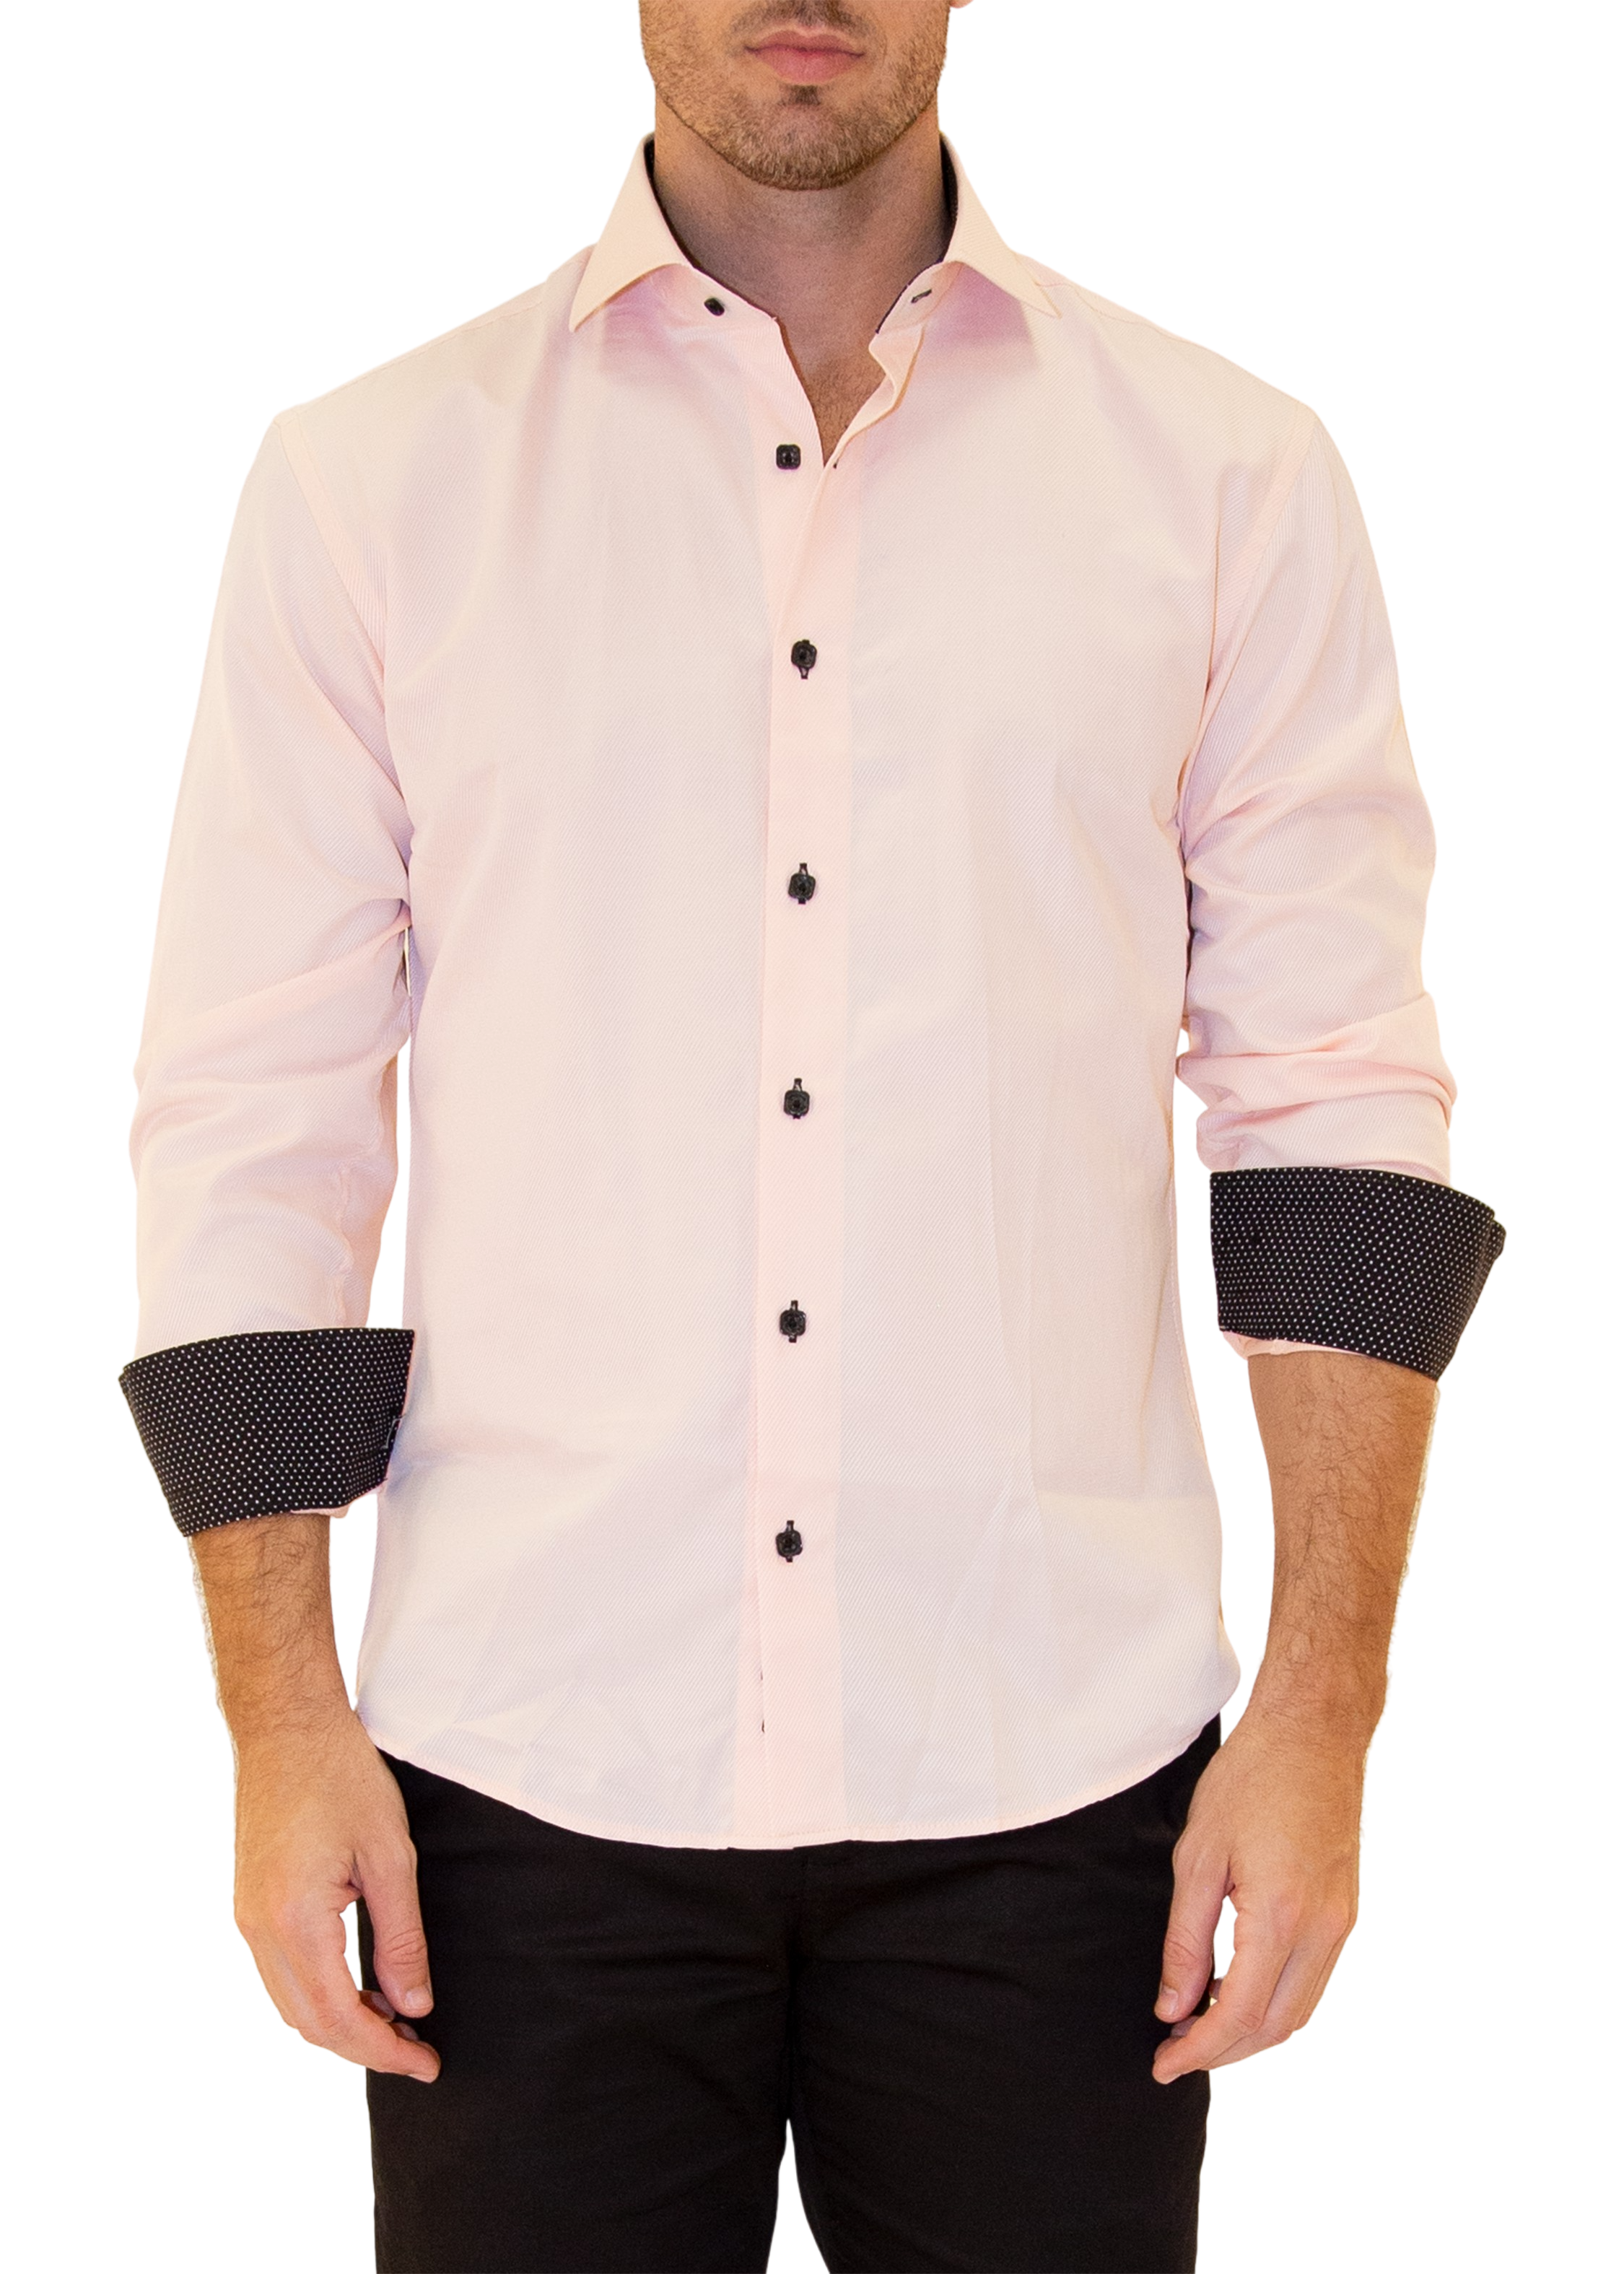 Men's Classic Fit Long Sleeve Wrinkle Resistant Button Down Premium Dress  Shirt (Peach, M) 